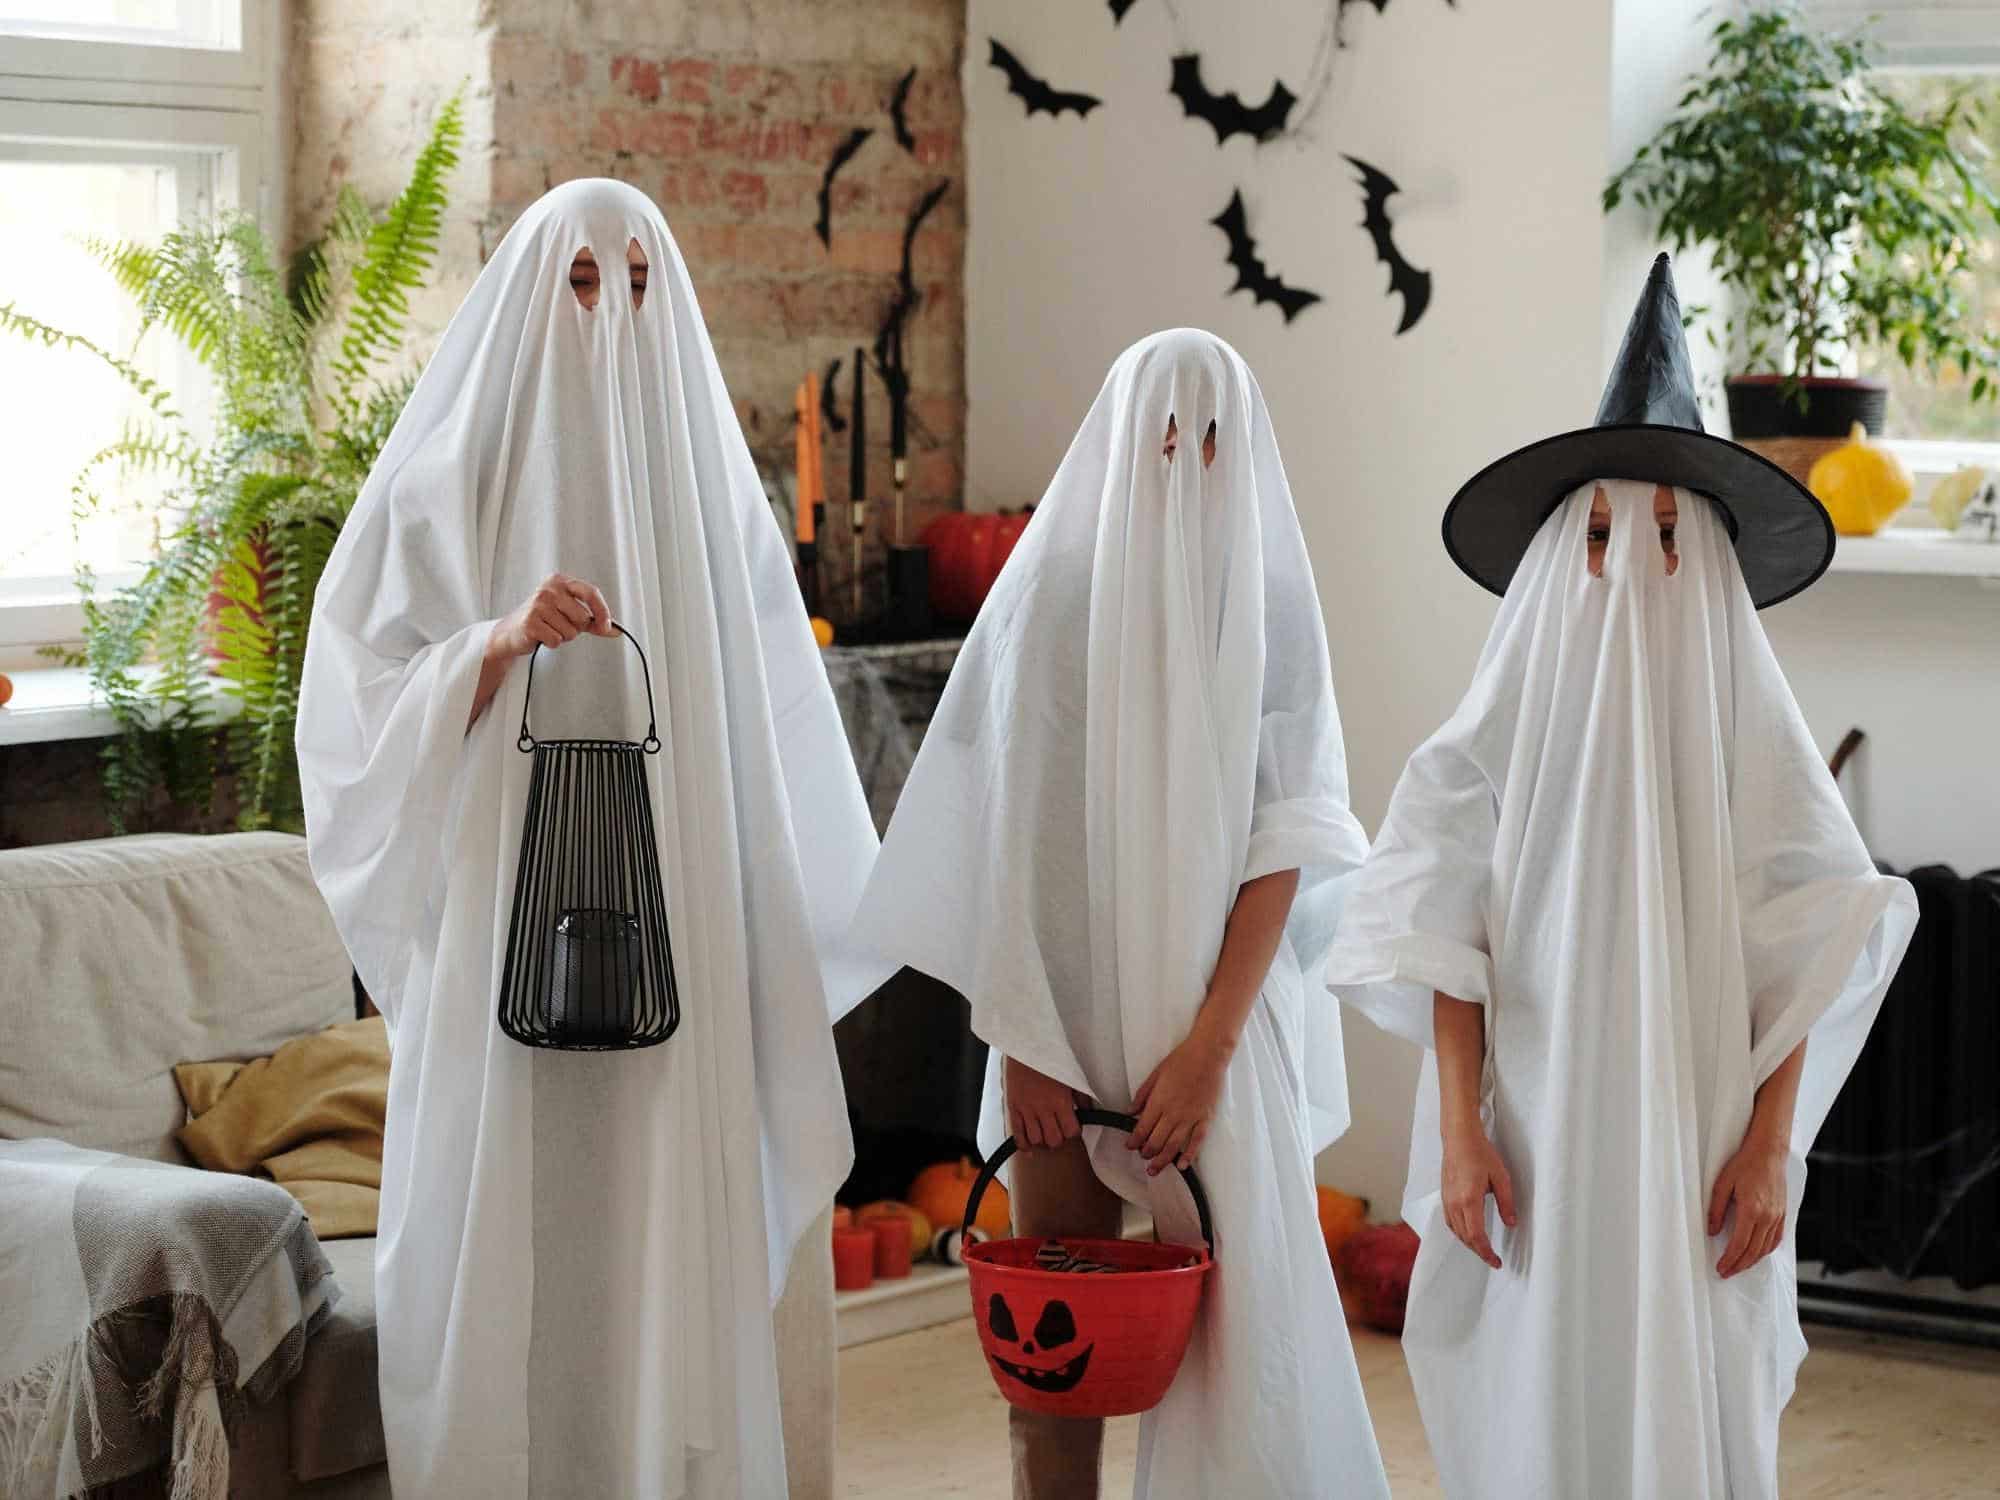 Three kids dressed as Halloween ghosts